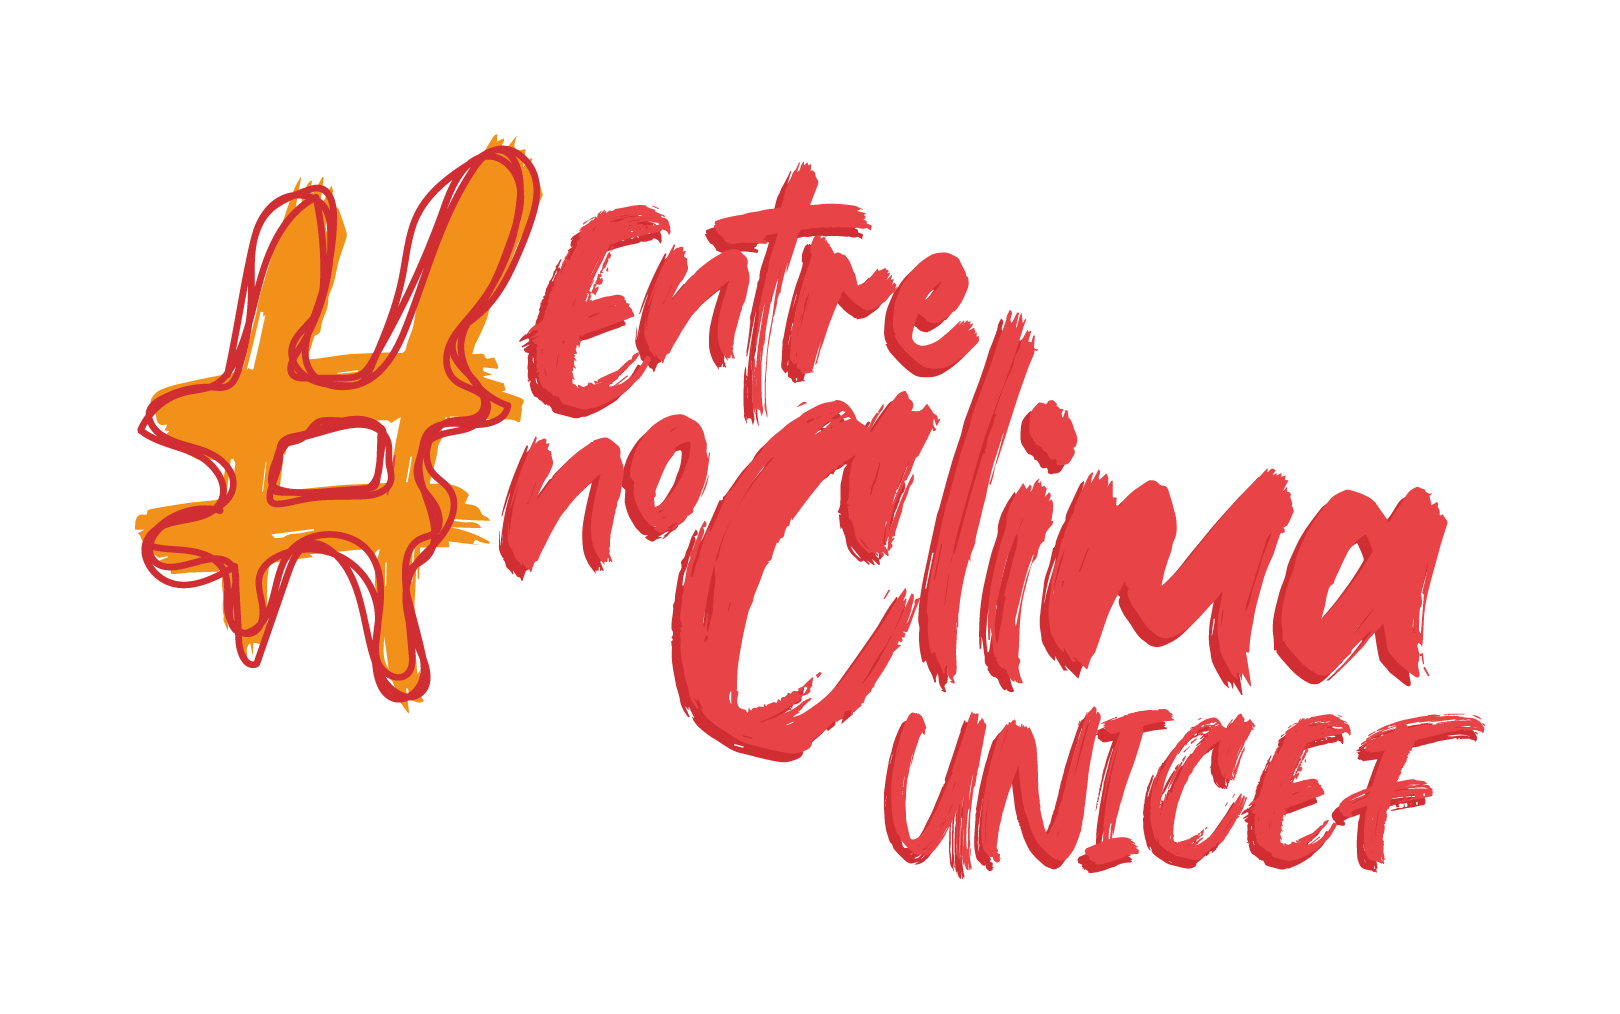 Logo #EntreNoClimaUNICEF